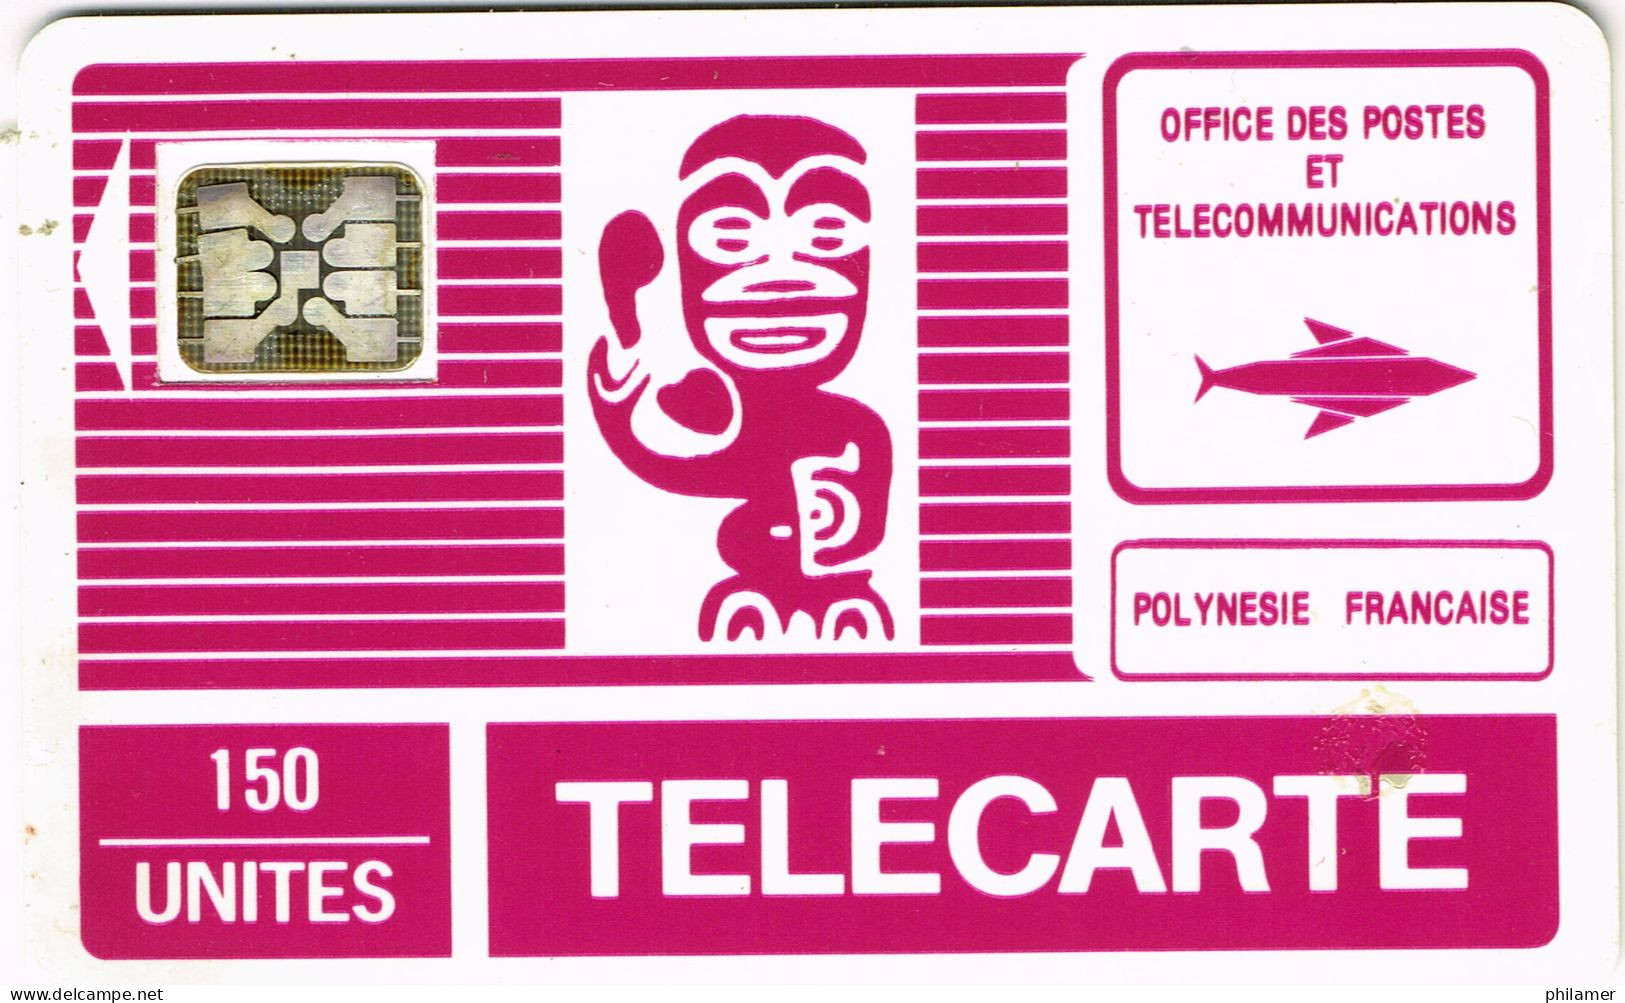 Polynesie Francaise French Polynesia Phonecard Telecarte PF2B Tiki Generique Telephone SC4 Trou 6 UT BE - Nuova Caledonia